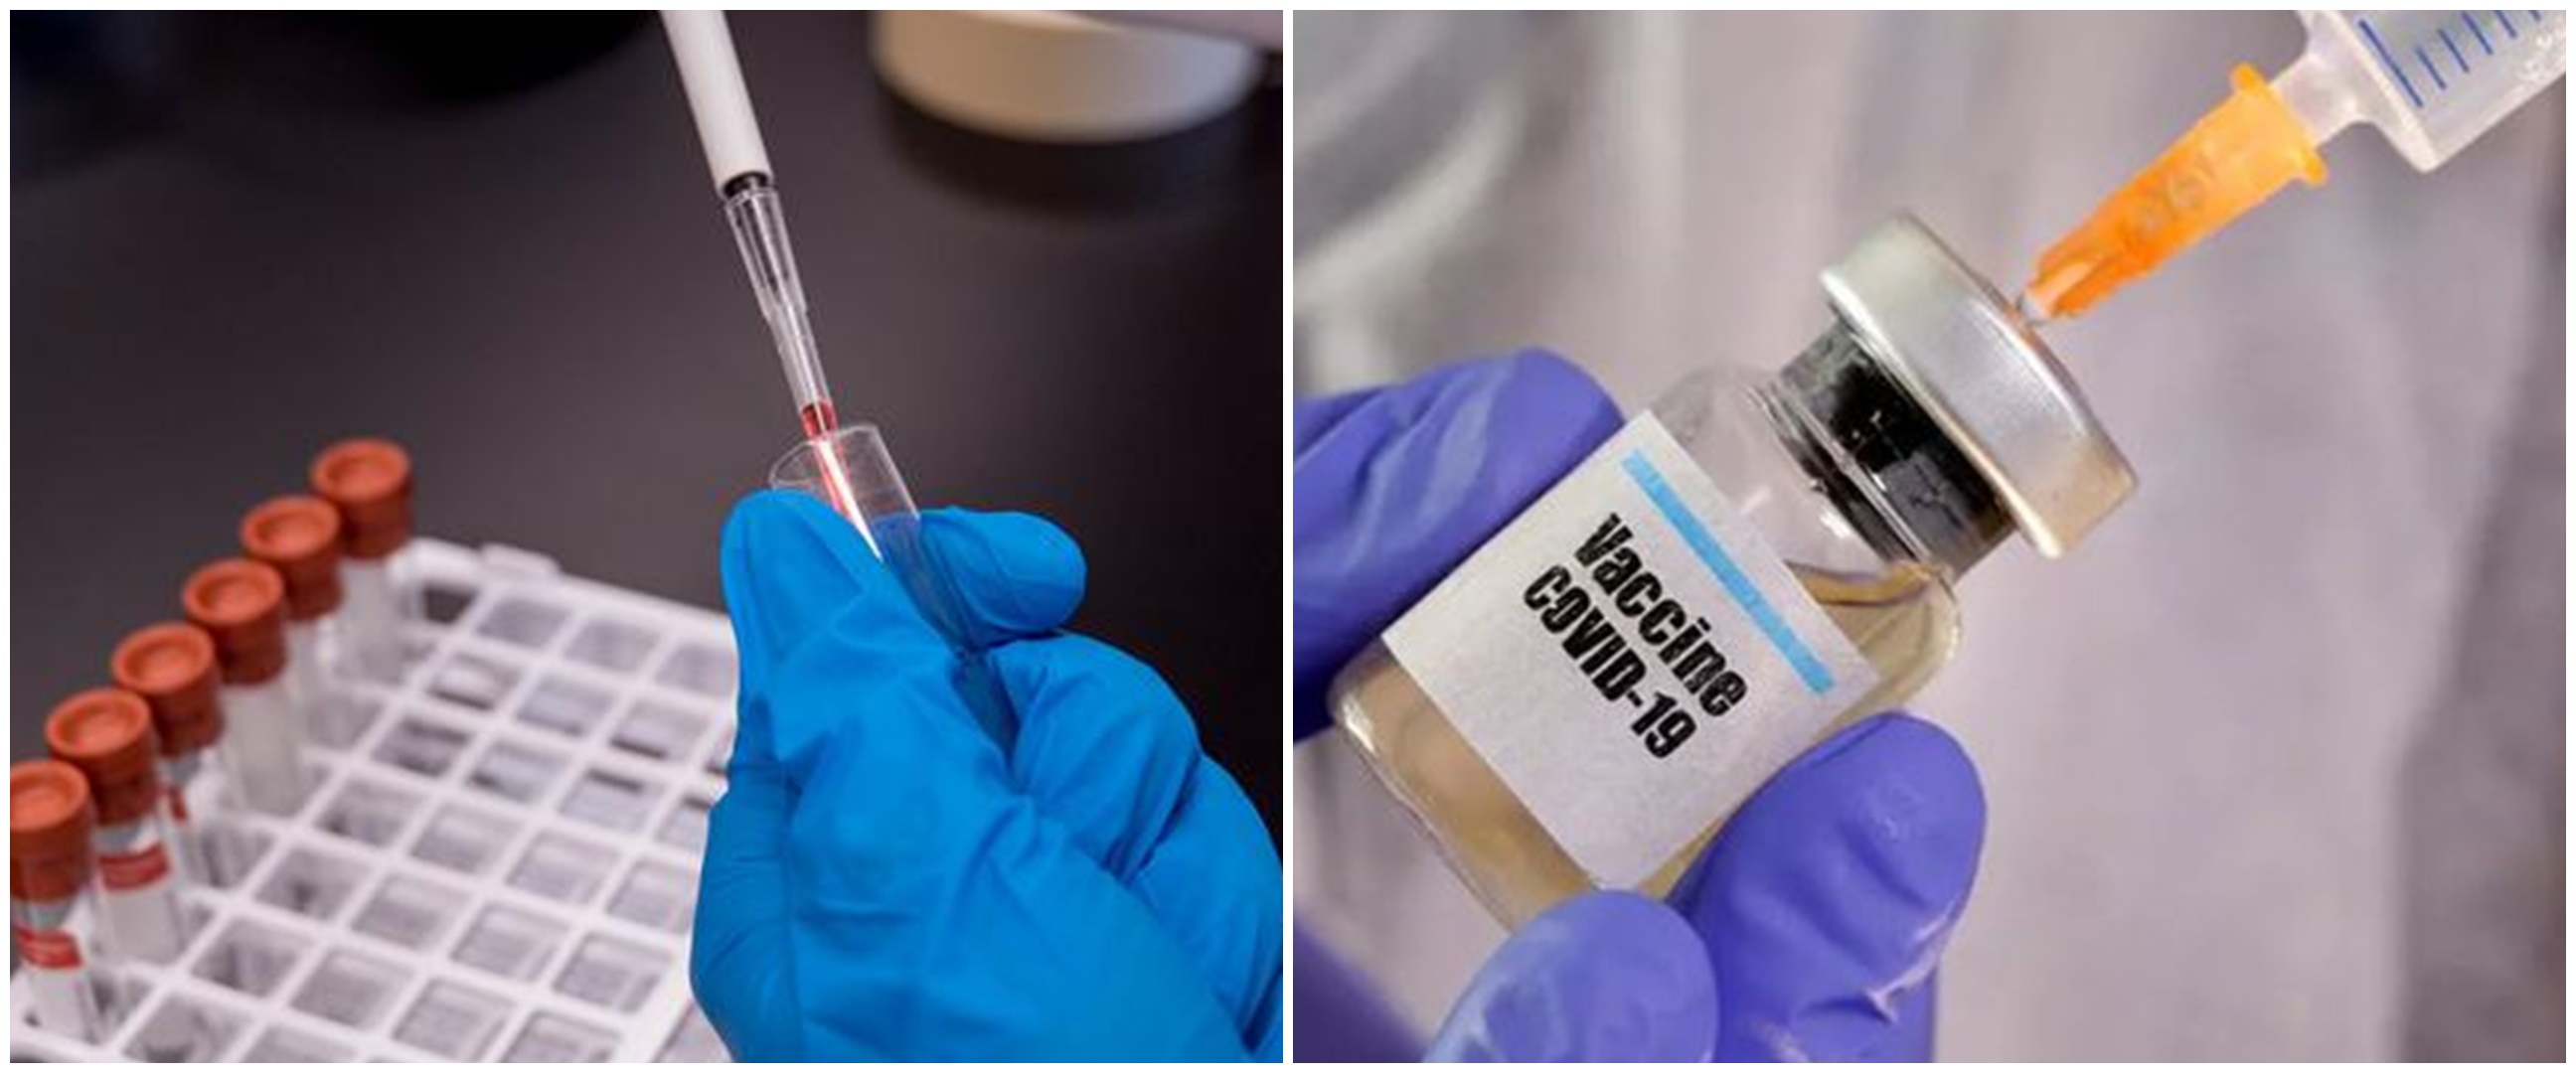  Vaksin virus corona dipastikan tersedia paling cepat akhir 2020